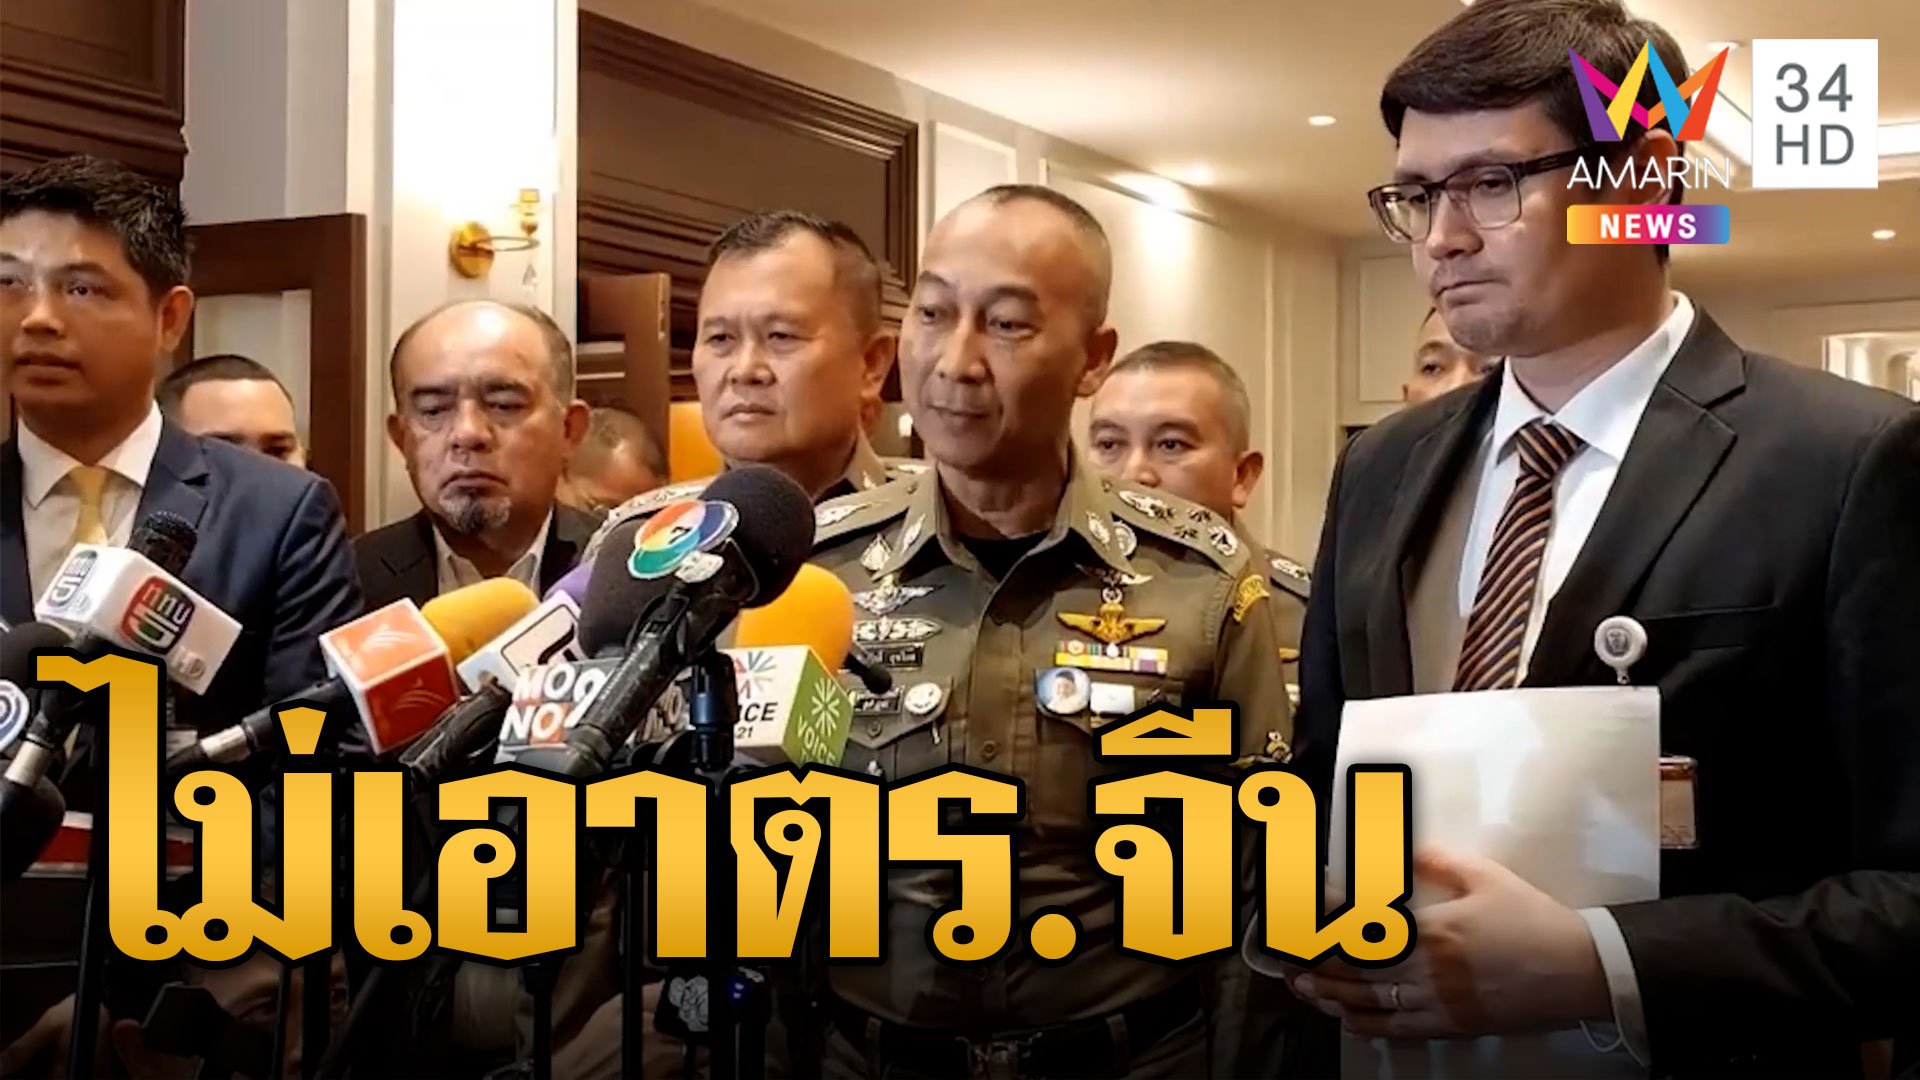 ผบ.ตร.ส่ายหน้า ให้ตำรวจจีนลาดตระเวนในไทย | ข่าวอรุณอมรินทร์ | 14 พ.ย. 66 | AMARIN TVHD34